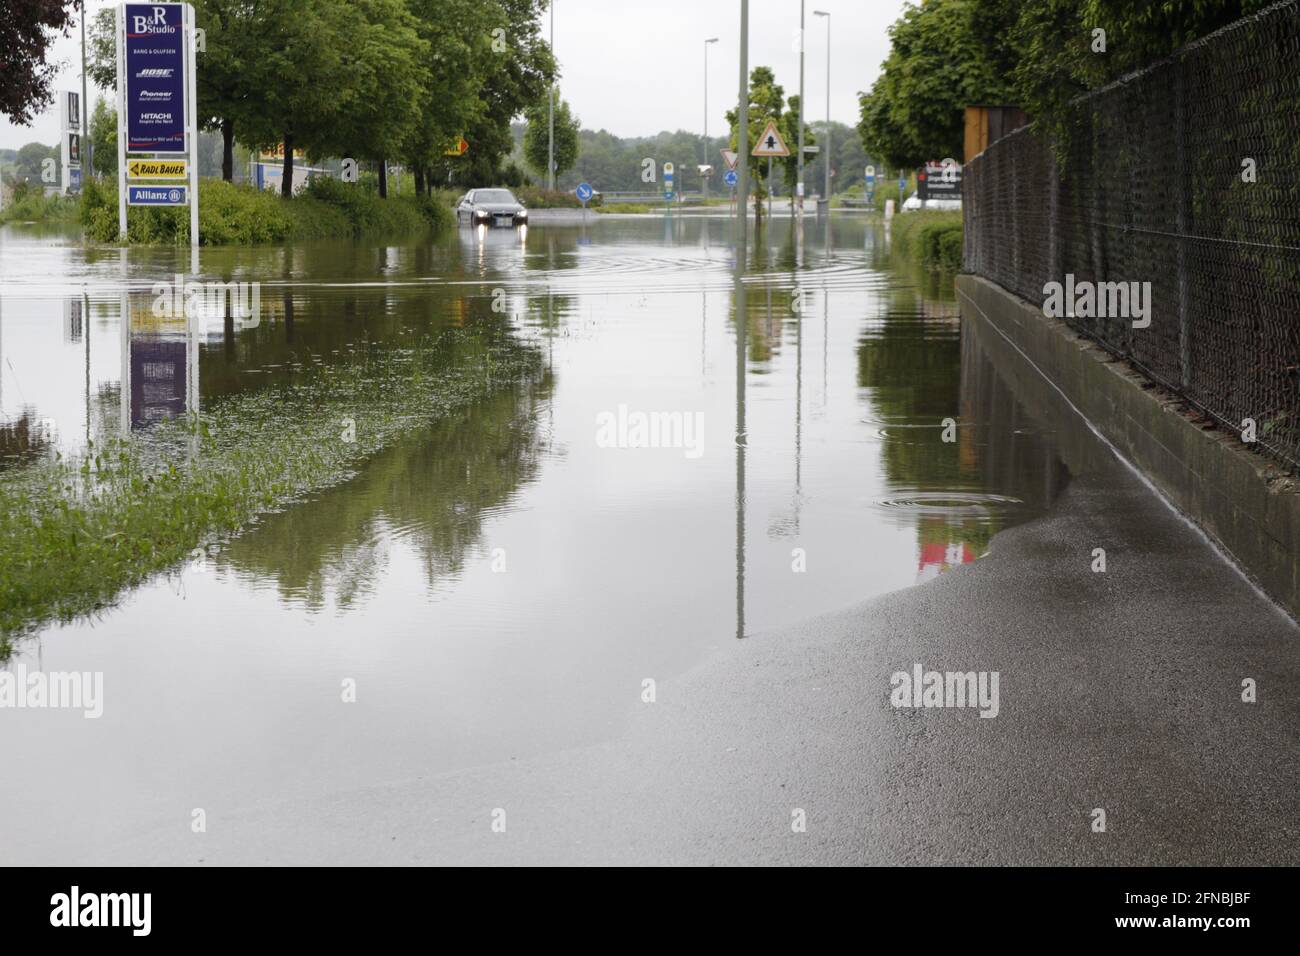 Überschwemmung auf dem Gehweg und auf der Strasse - Hochwasser Foto Stock